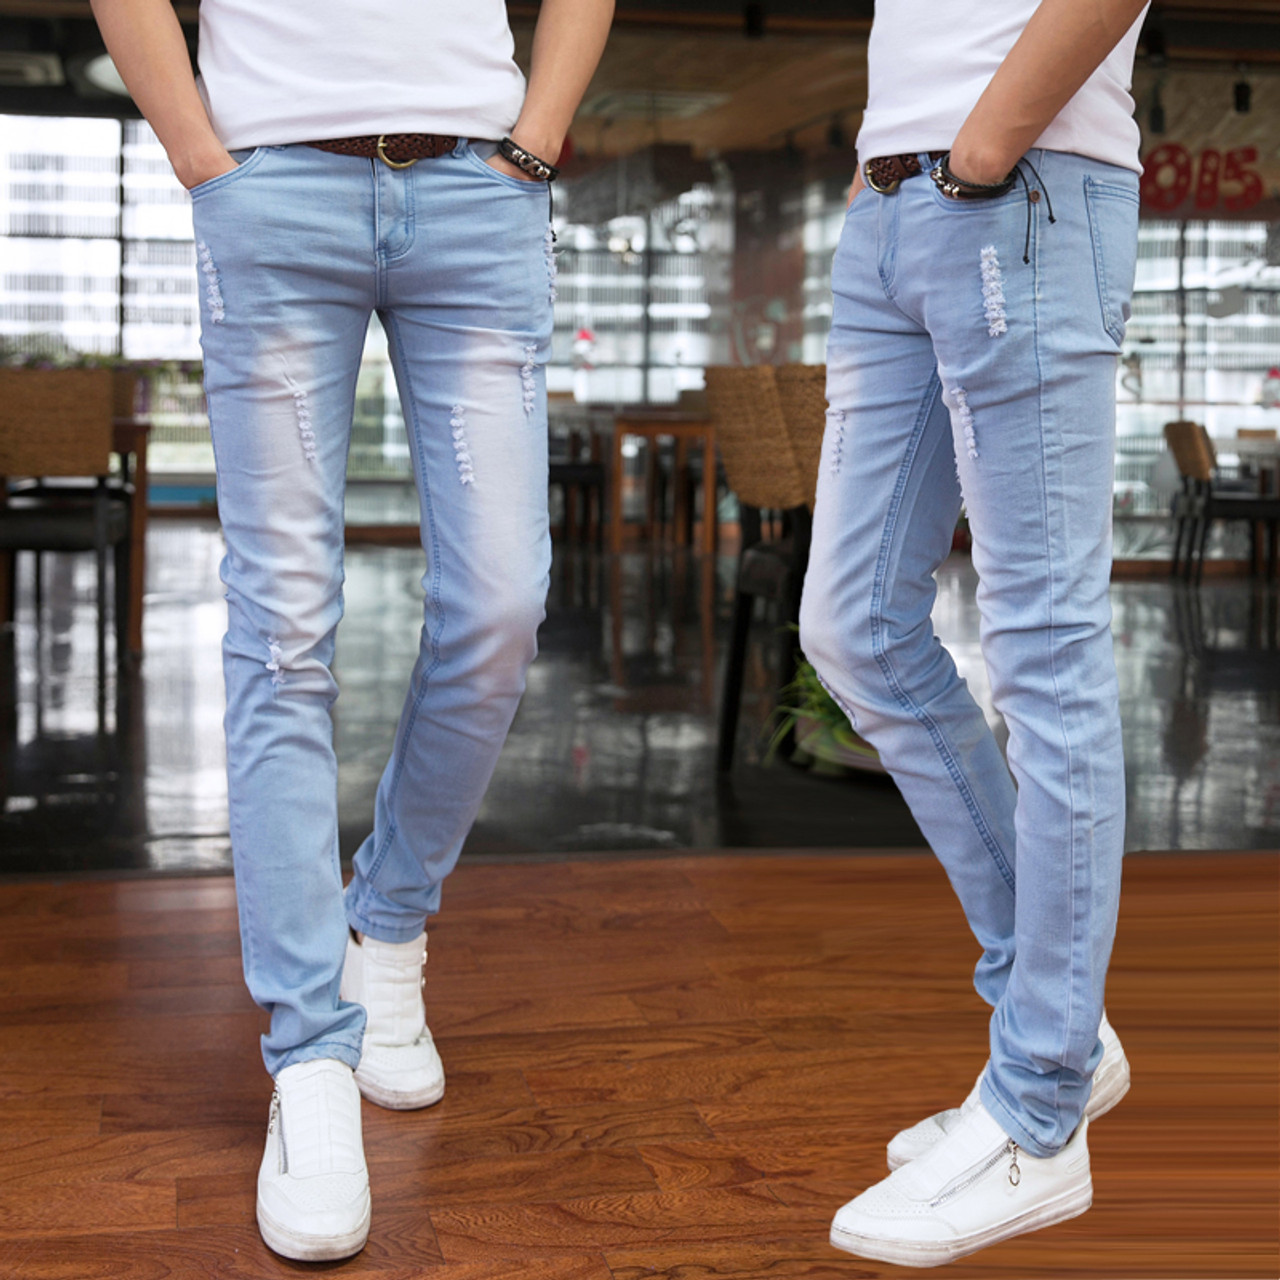 Do men wear butt lift jeans? - Quora